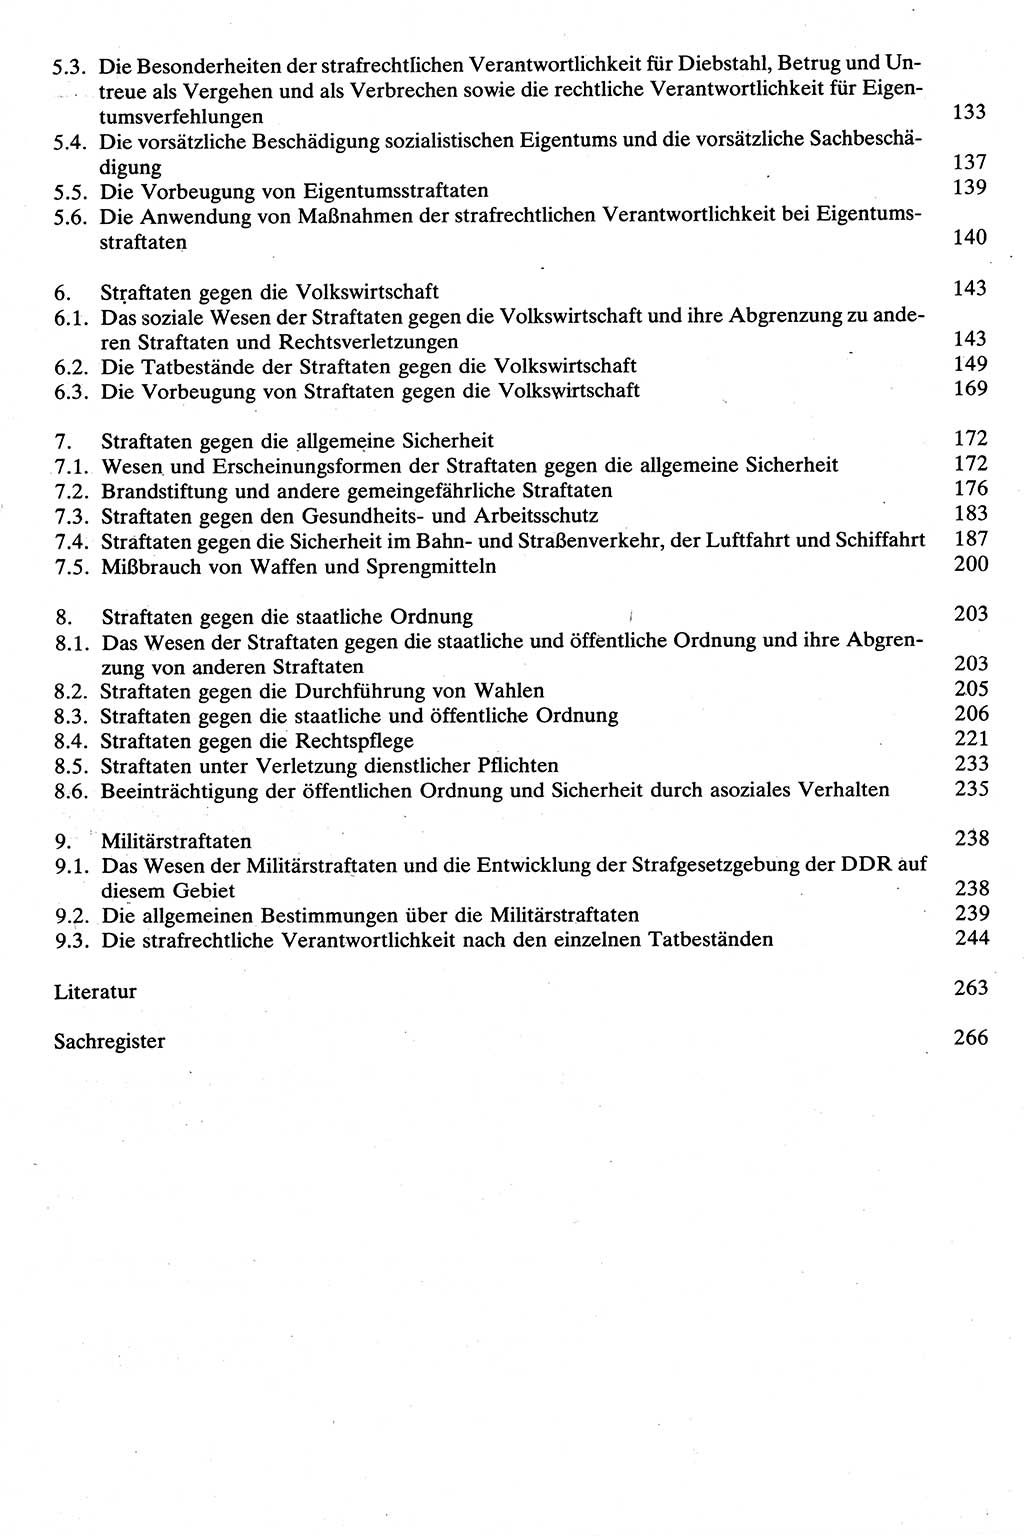 Strafrecht [Deutsche Demokratische Republik (DDR)], Besonderer Teil, Lehrbuch 1981, Seite 6 (Strafr. DDR BT Lb. 1981, S. 6)